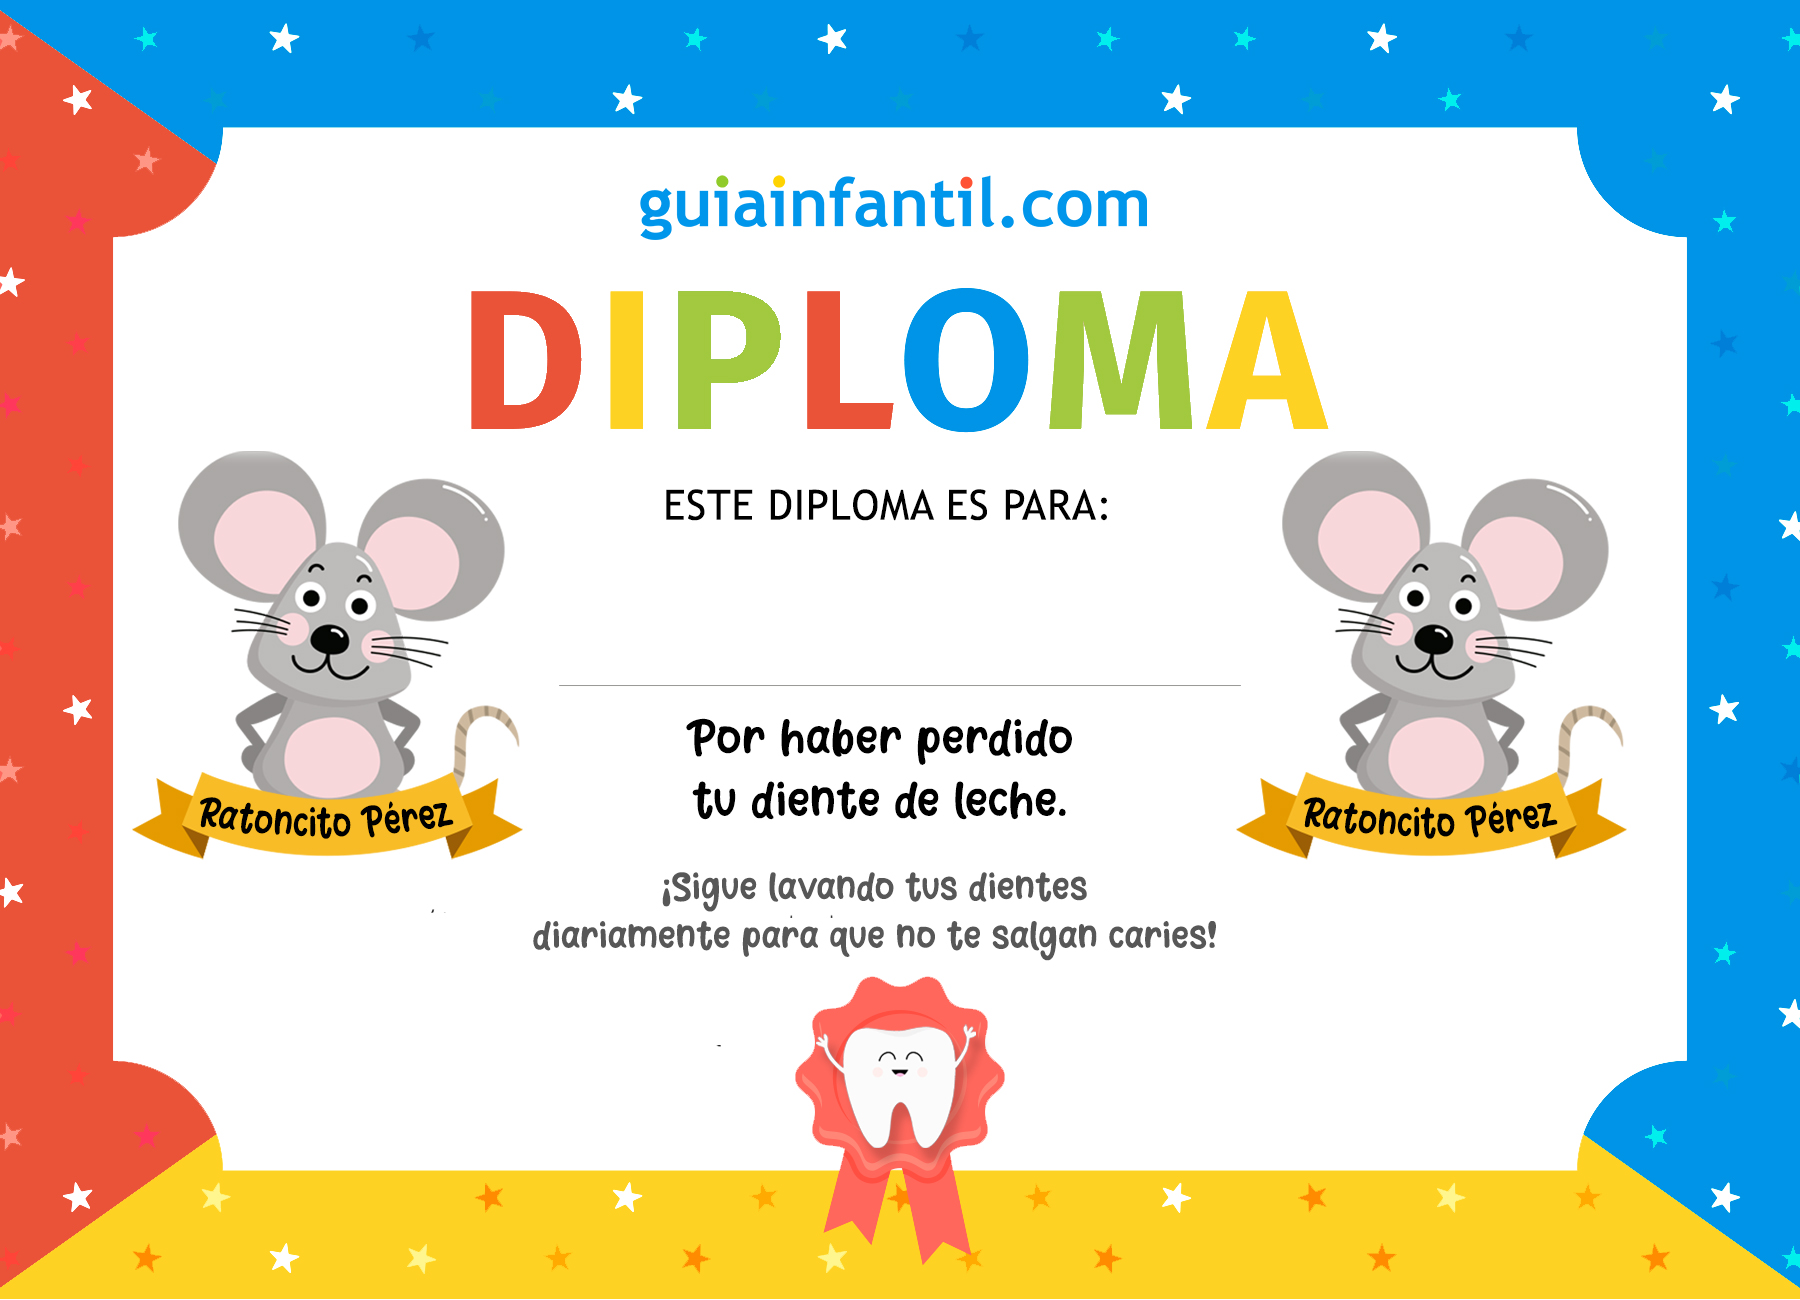 https://static.guiainfantil.com/media/26654/diploma-ratoncito-perez.jpg